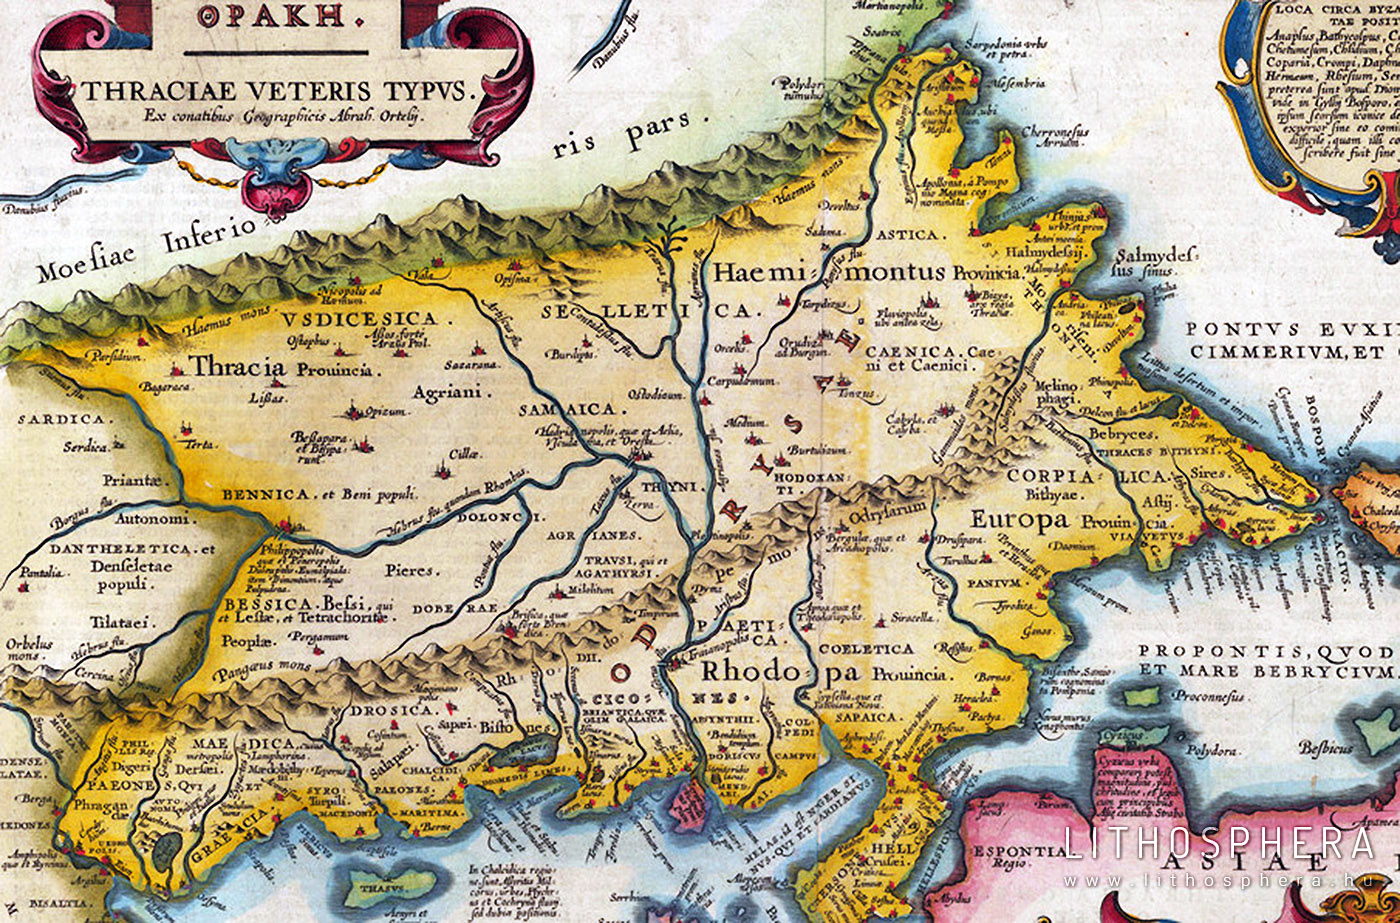 Gyökerek. Részlet Abraham Ortelius térképéről (Thraciae veteris typvs... 1585). Az agrián nevű trák néptörzs lekóhelye a Taxus fluvius (Ardasz) folyó mentén volt a Kr. e. I. évezred első felében. Itt sejthető a bükkaljai kőkultúra forrásvidéke